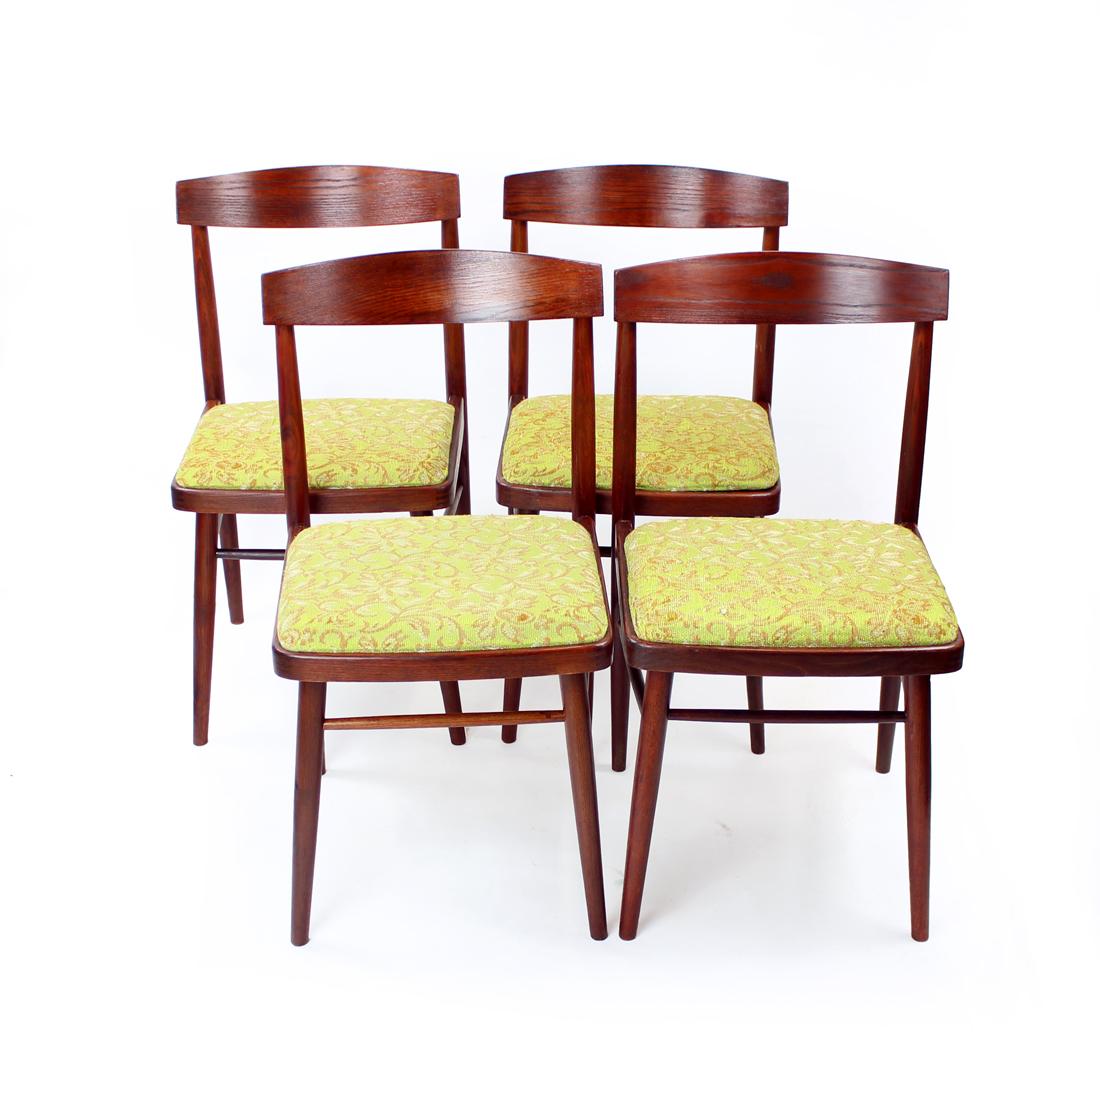 Ensemble de quatre belles chaises de salle à manger du milieu du siècle produites par la société TON en Tchécoslovaquie dans les années 1960. L'étiquette d'origine est encore attachée. Les chaises sont fabriquées en bois de chêne dans une teinte